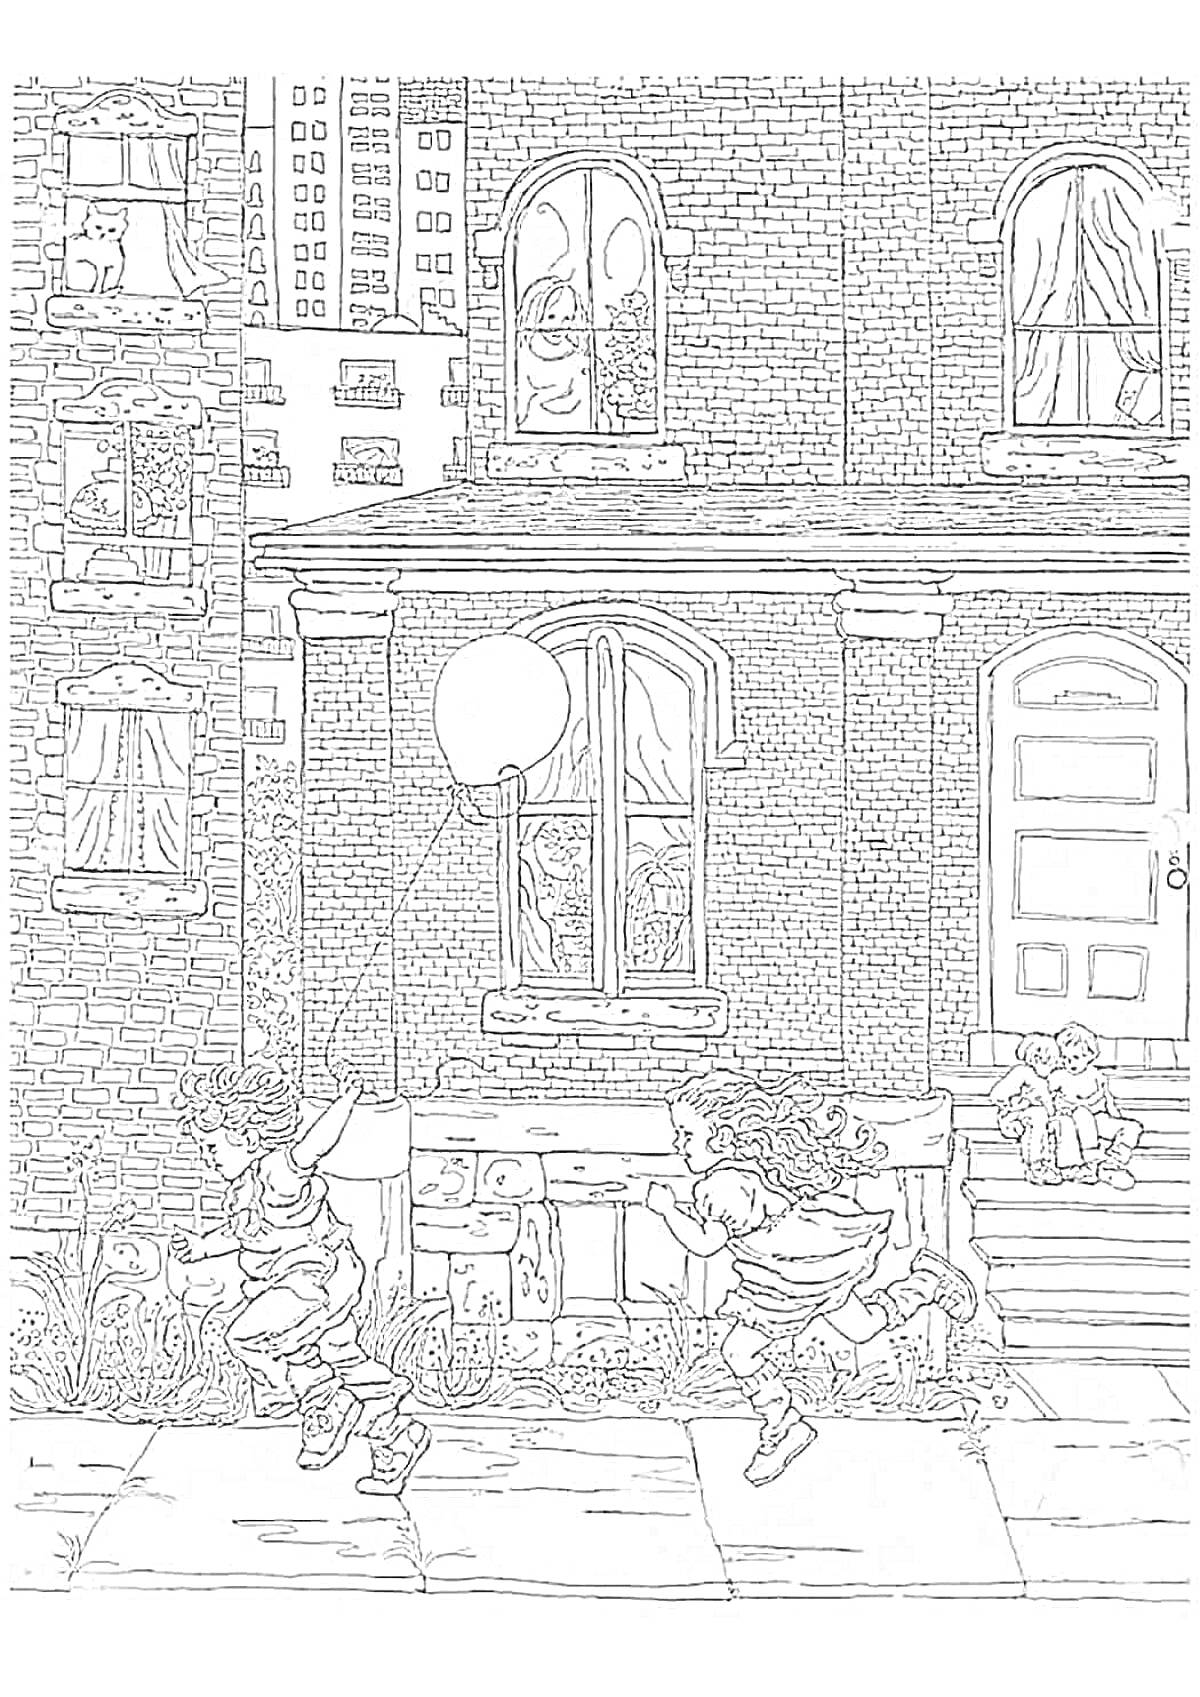 Раскраска Дети с воздушным шариком на городской улице перед домомЭлементы на фото:- Дети, играющие с воздушным шариком - Дом с окнами и дверью - Дети, сидящие на ступеньках - Люди, выглядывающие из окон - Многоэтажные здания на фоне - Плиточный тротуар